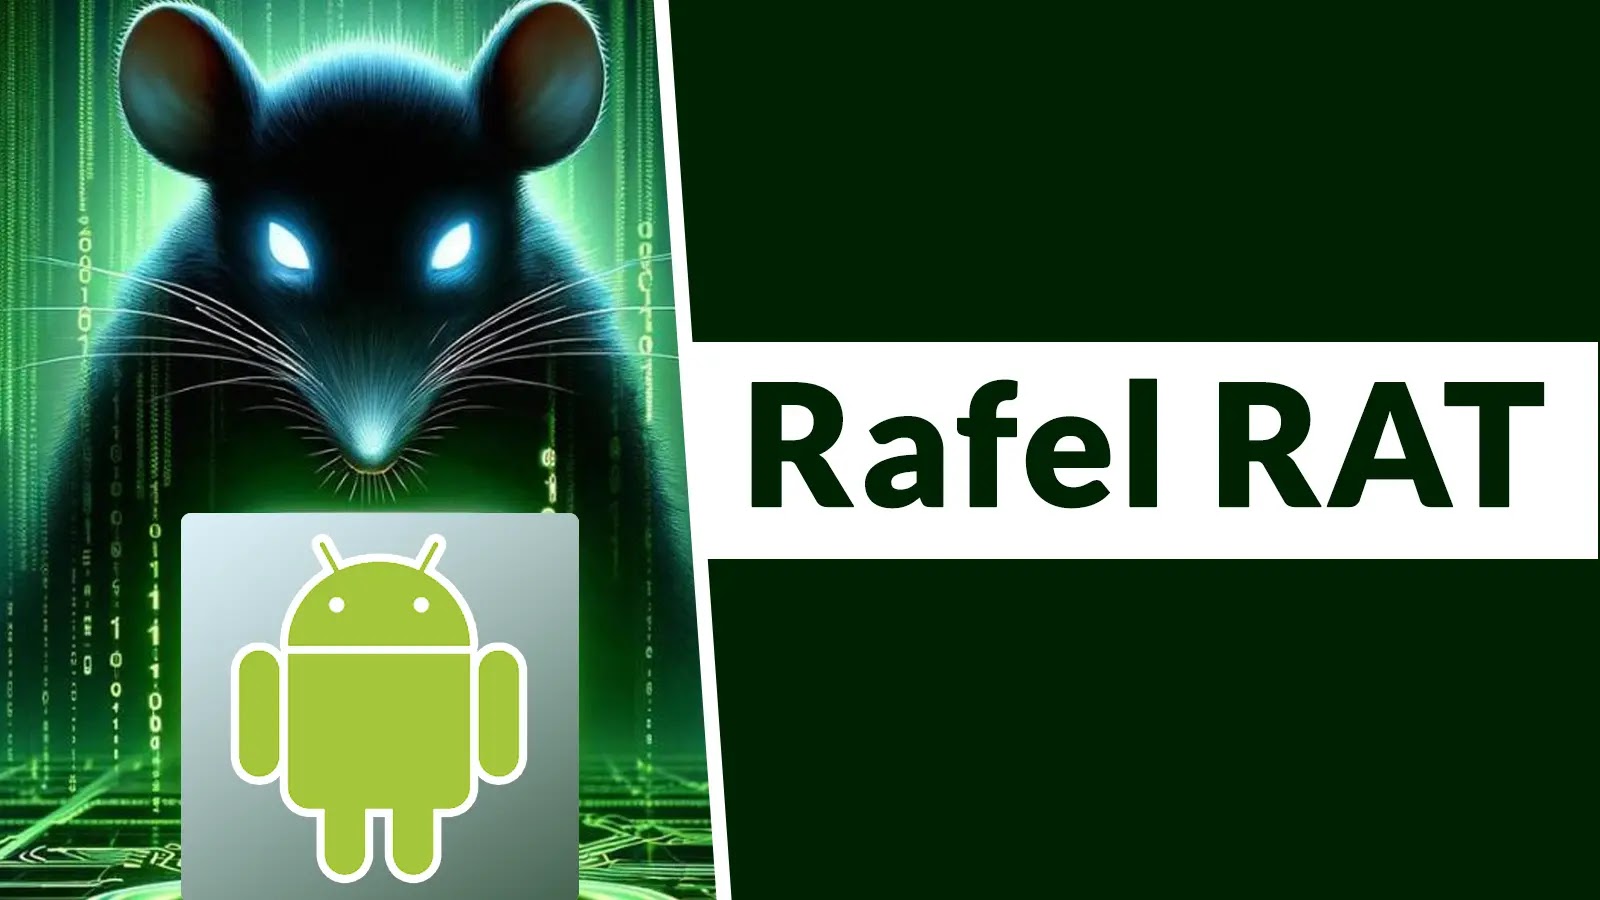 ​Alerte sécurité: Rafel RAT menace plus de la moitié des smartphones Android !